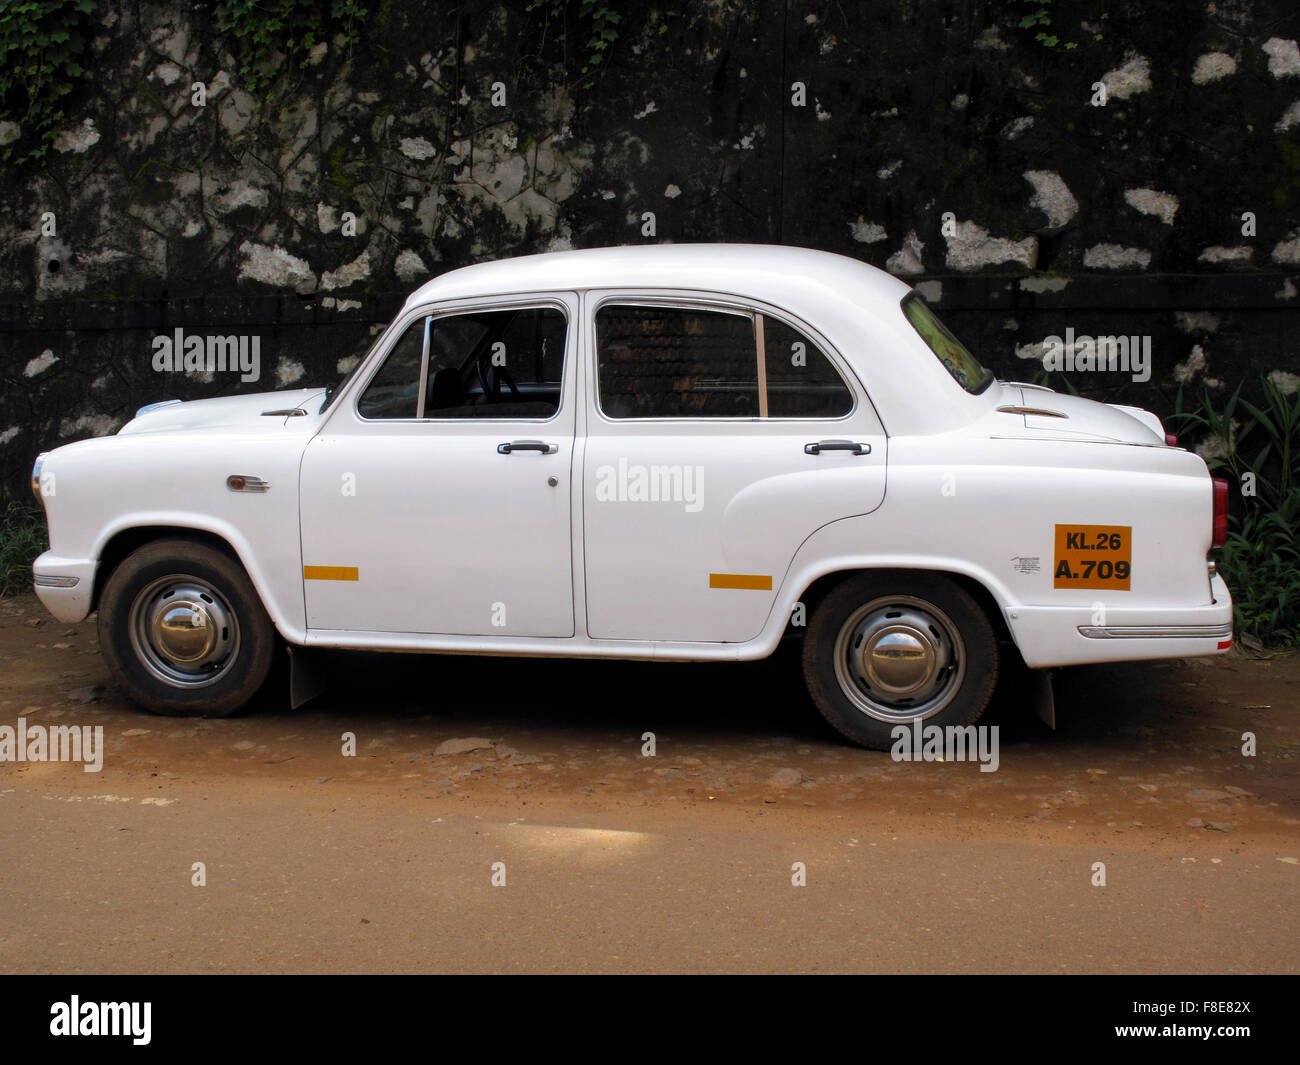 An Ambassador car in Kerala, India Stock Photo